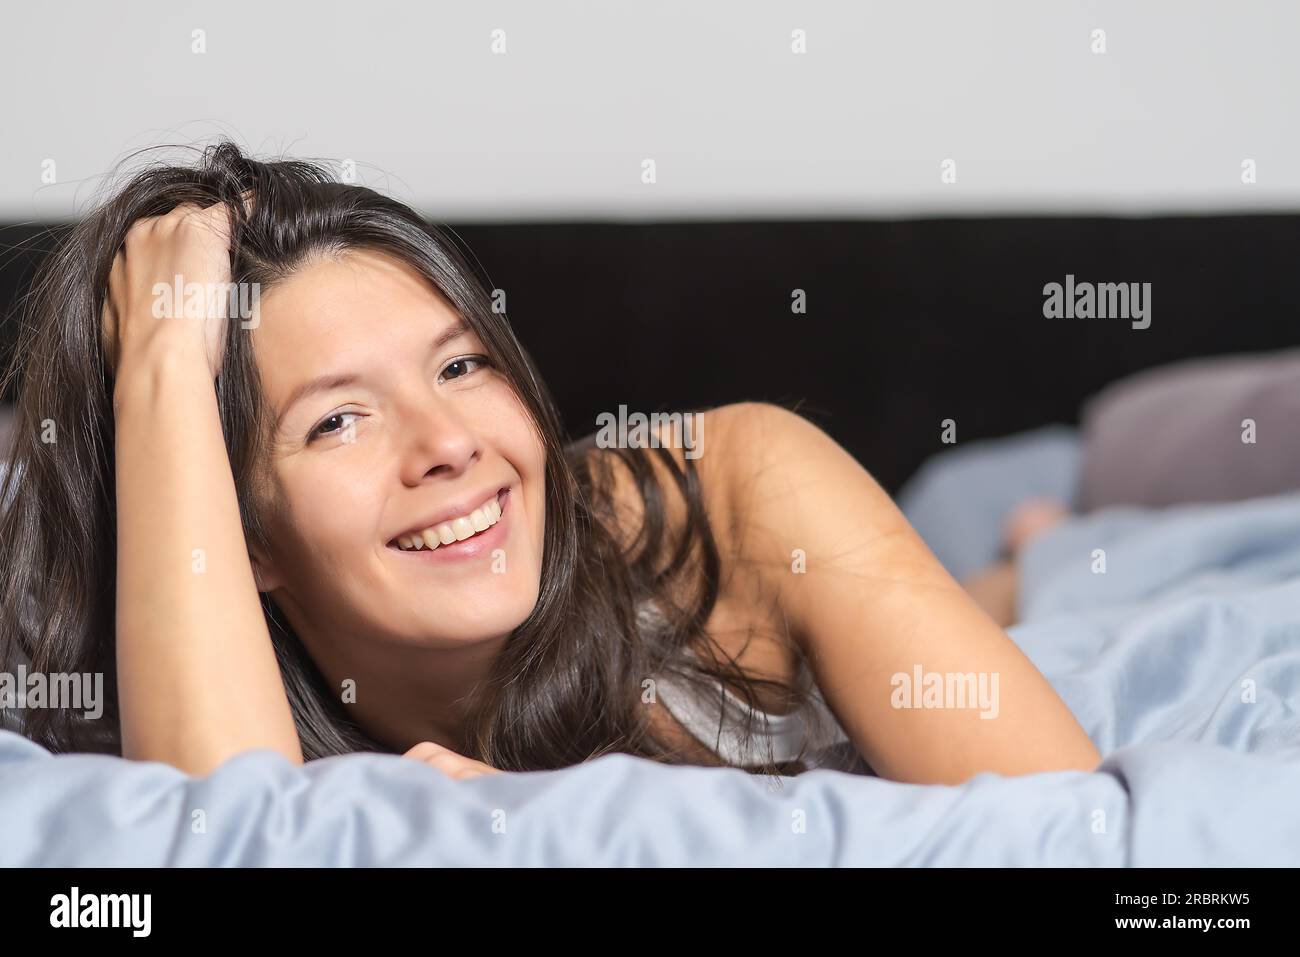 Attraktive junge Frau genießen einen faulen Tag liegend auf dem Bauch auf eine warme Bettdecke kuscheln und mit einem glücklichen Lächeln in die Kamera schaut lächelnd Stockfoto